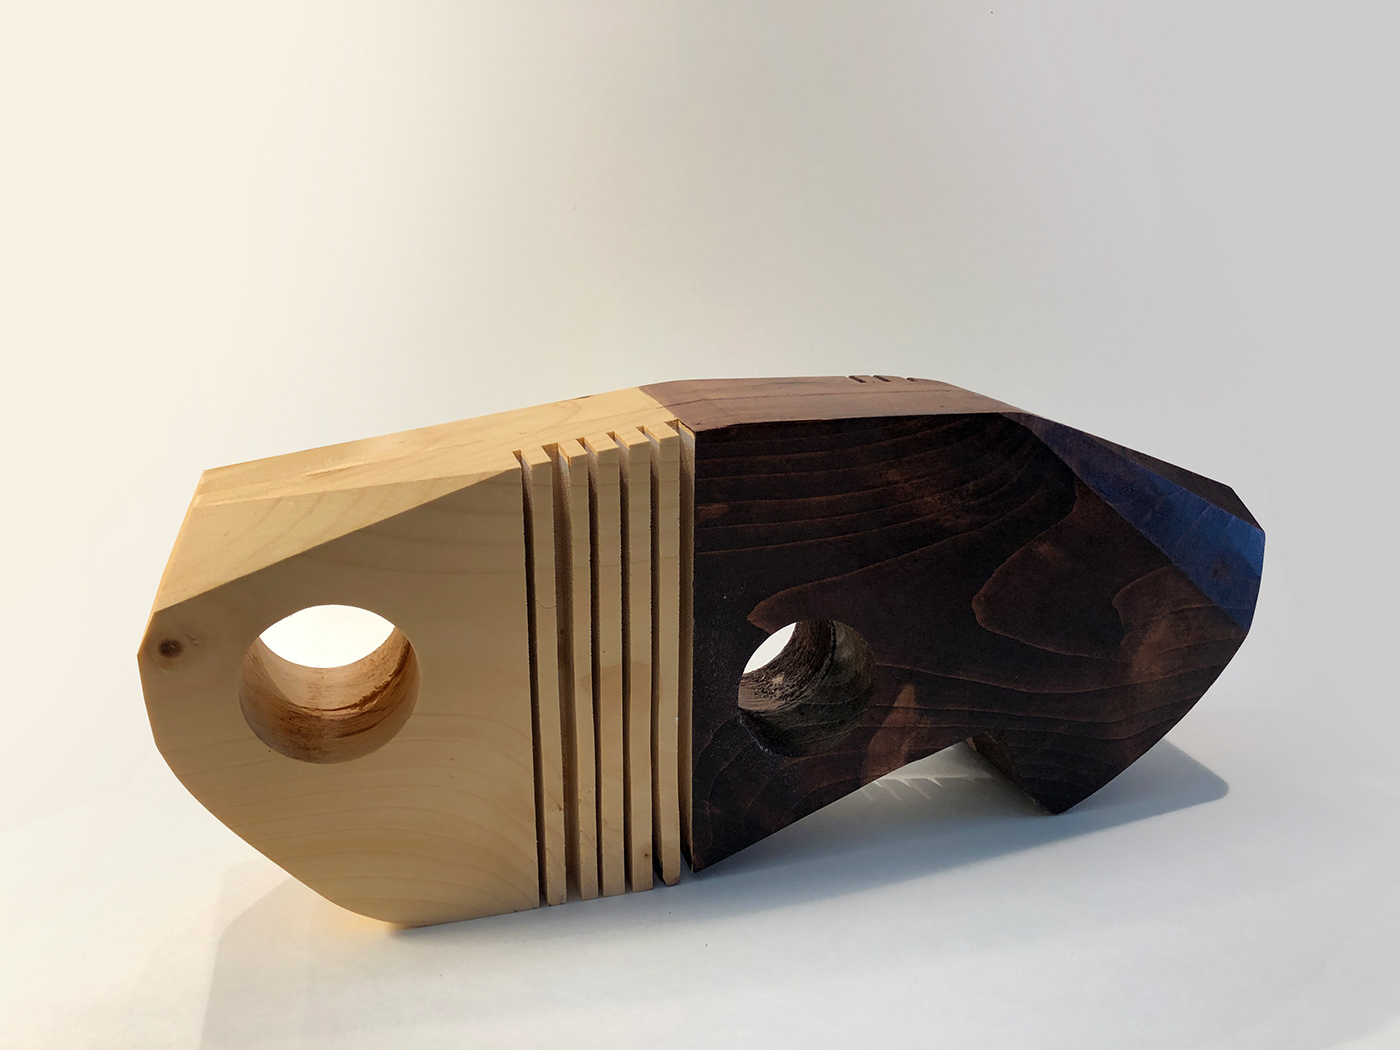 conceptualsculpture handmade sculpture unwantedchange wood woodensculpture